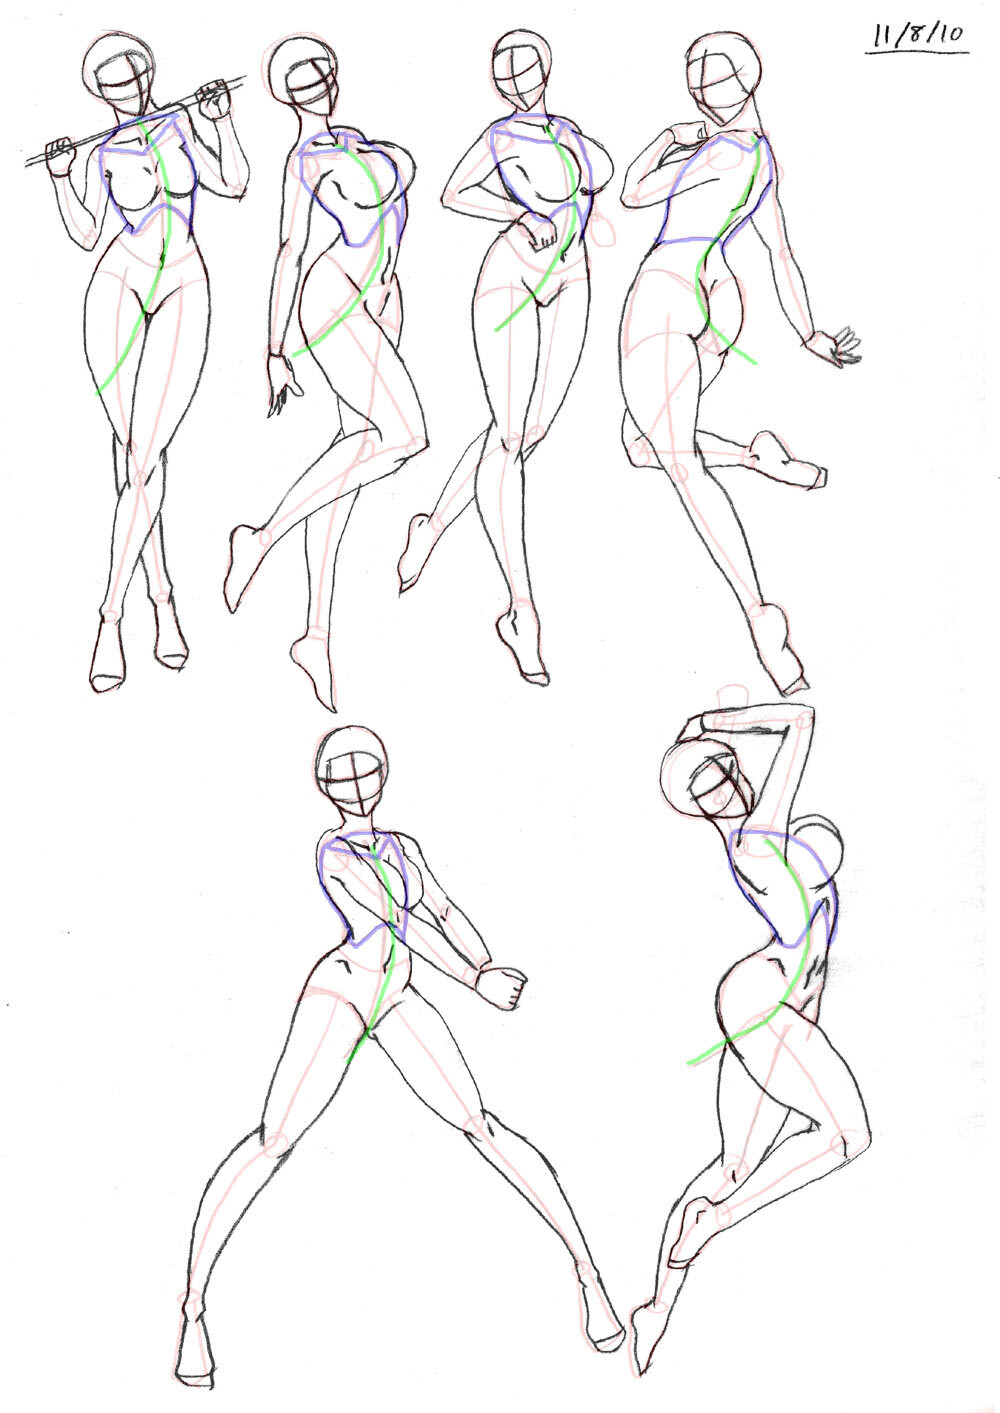 【绘画教材】人体结构的绘画和研究系列,打包下载http://t.